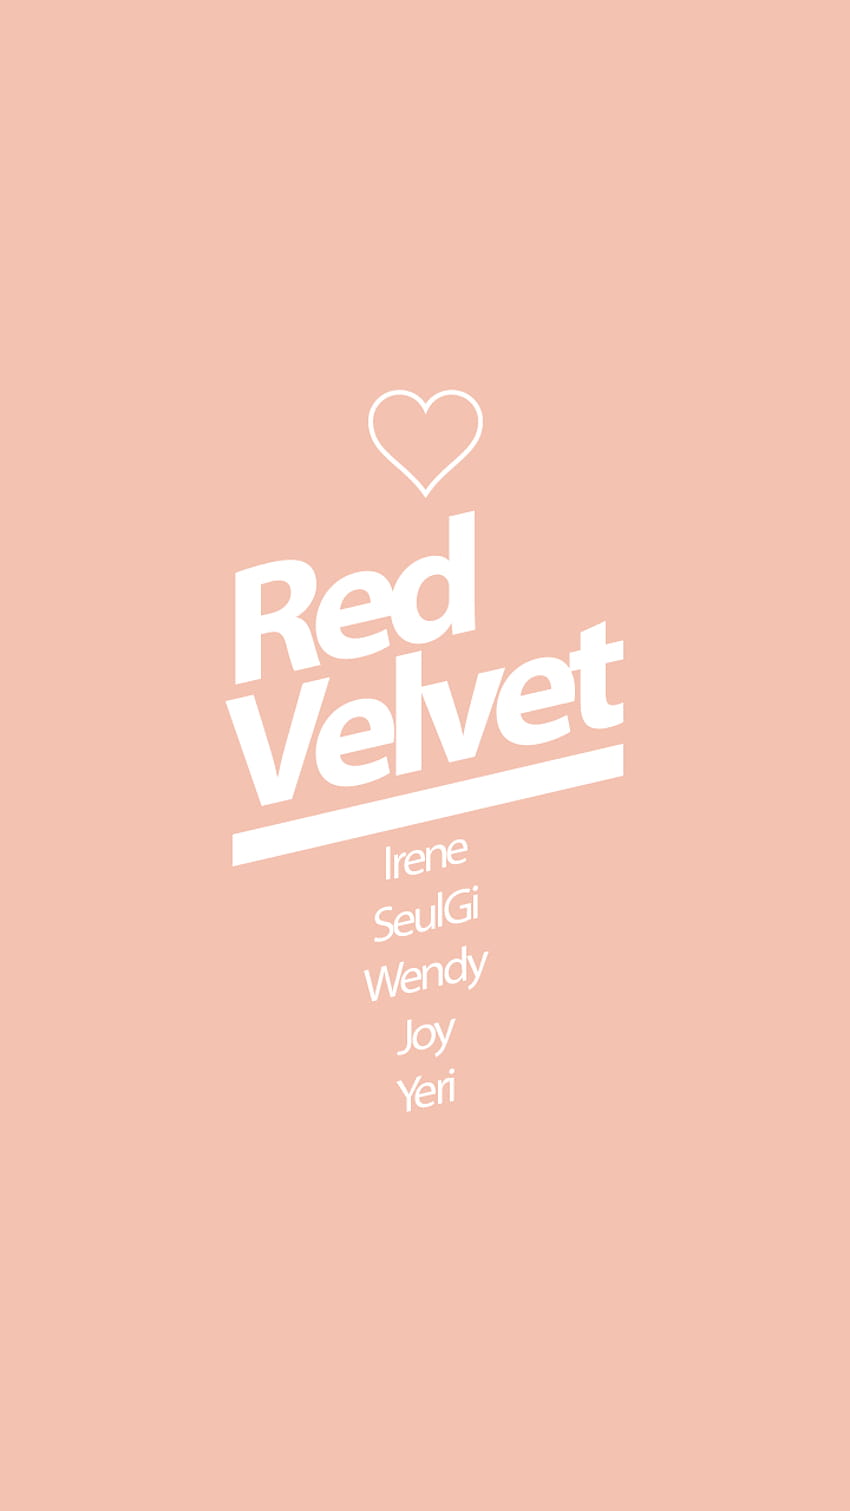 Red velvet Kpop Lockscreen, red velvet logo HD phone wallpaper